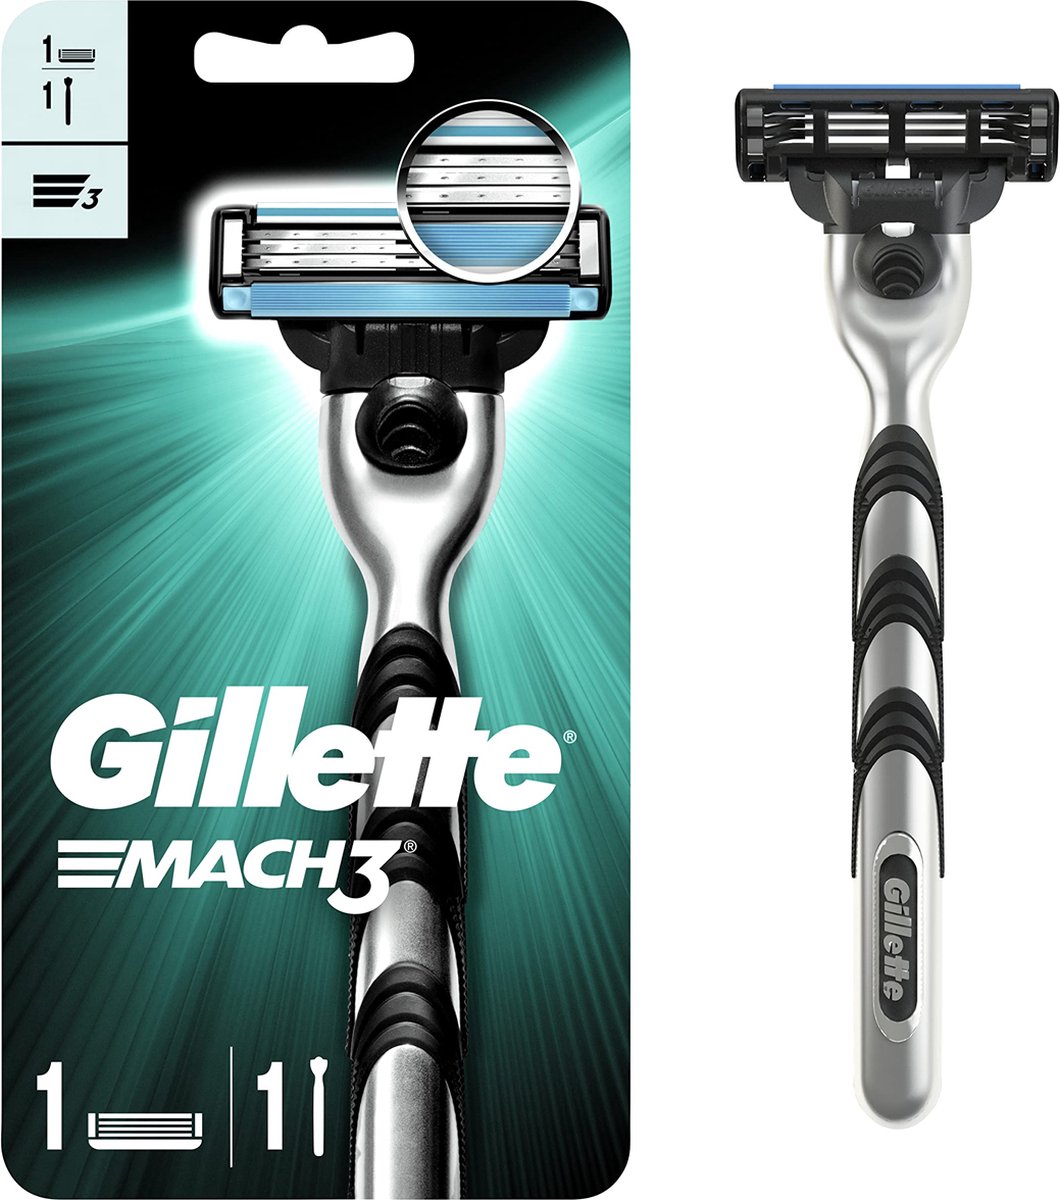 Gillette - Mach3 - Scheersysteem - 1 Handvat - 1 Scheermesje voor mannen - Gillette